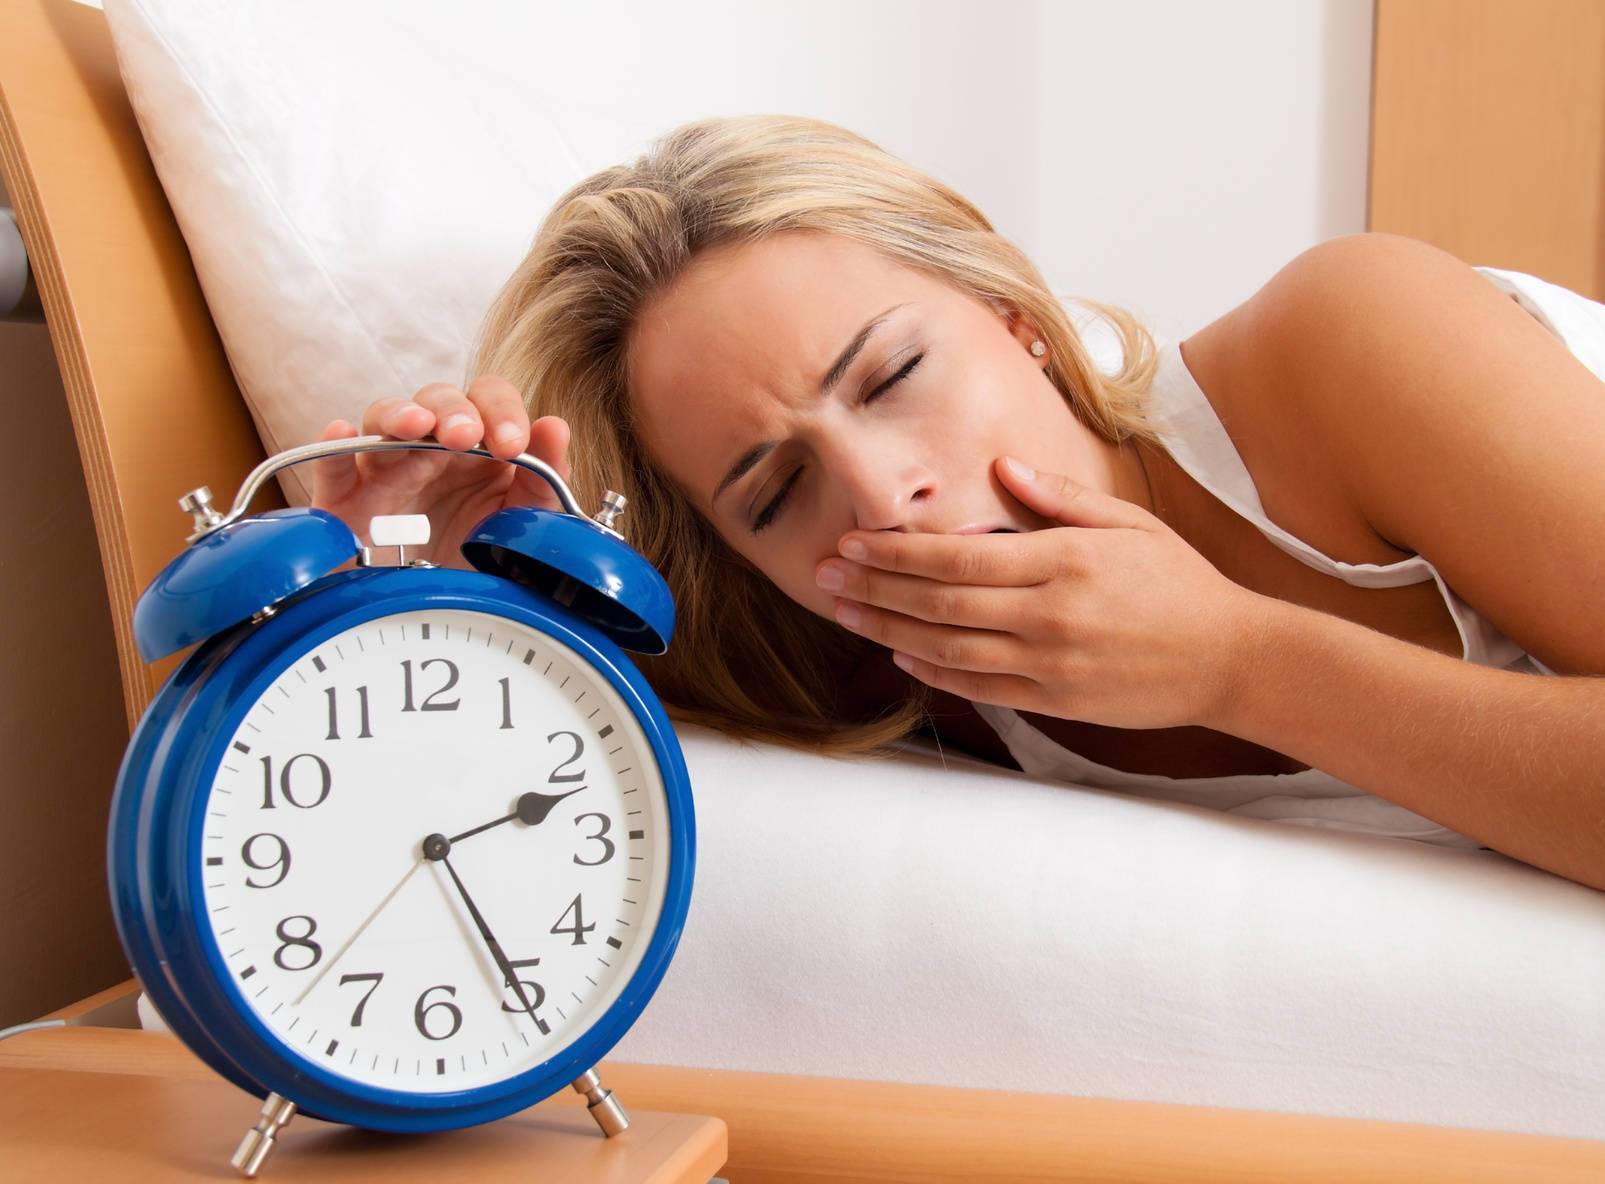 Повышенная сонливость : причины, симптомы, диагностика, лечение | компетентно о здоровье на ilive